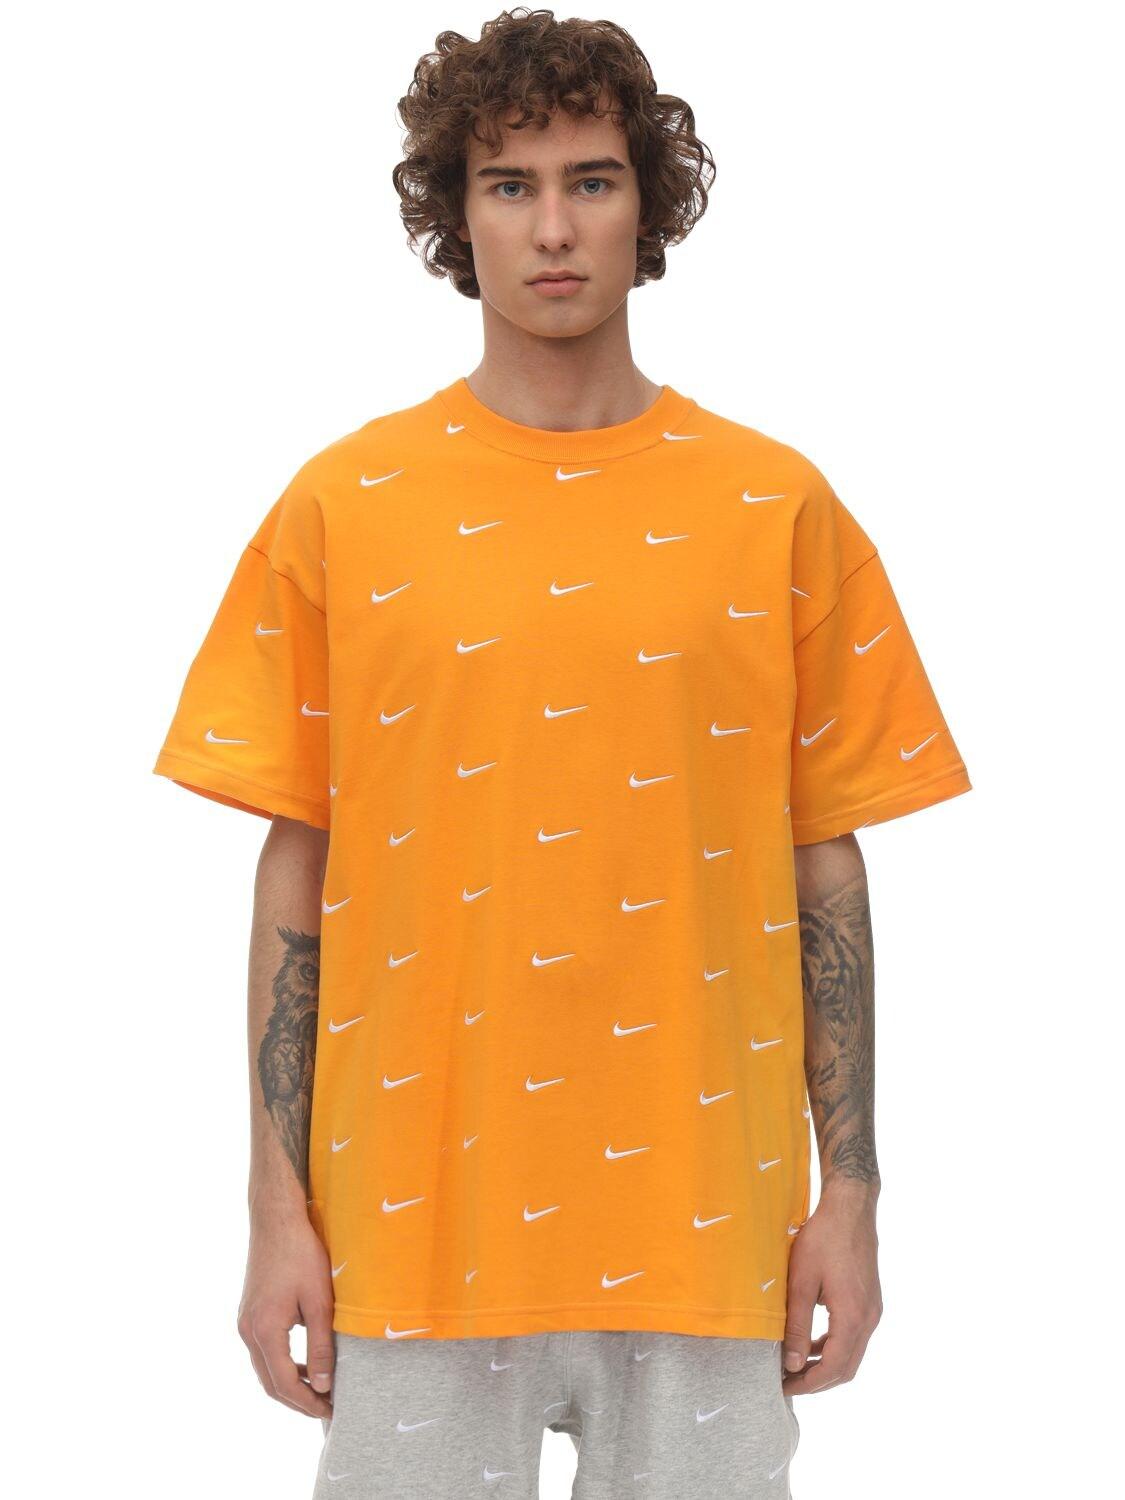 nike t shirt orange logo